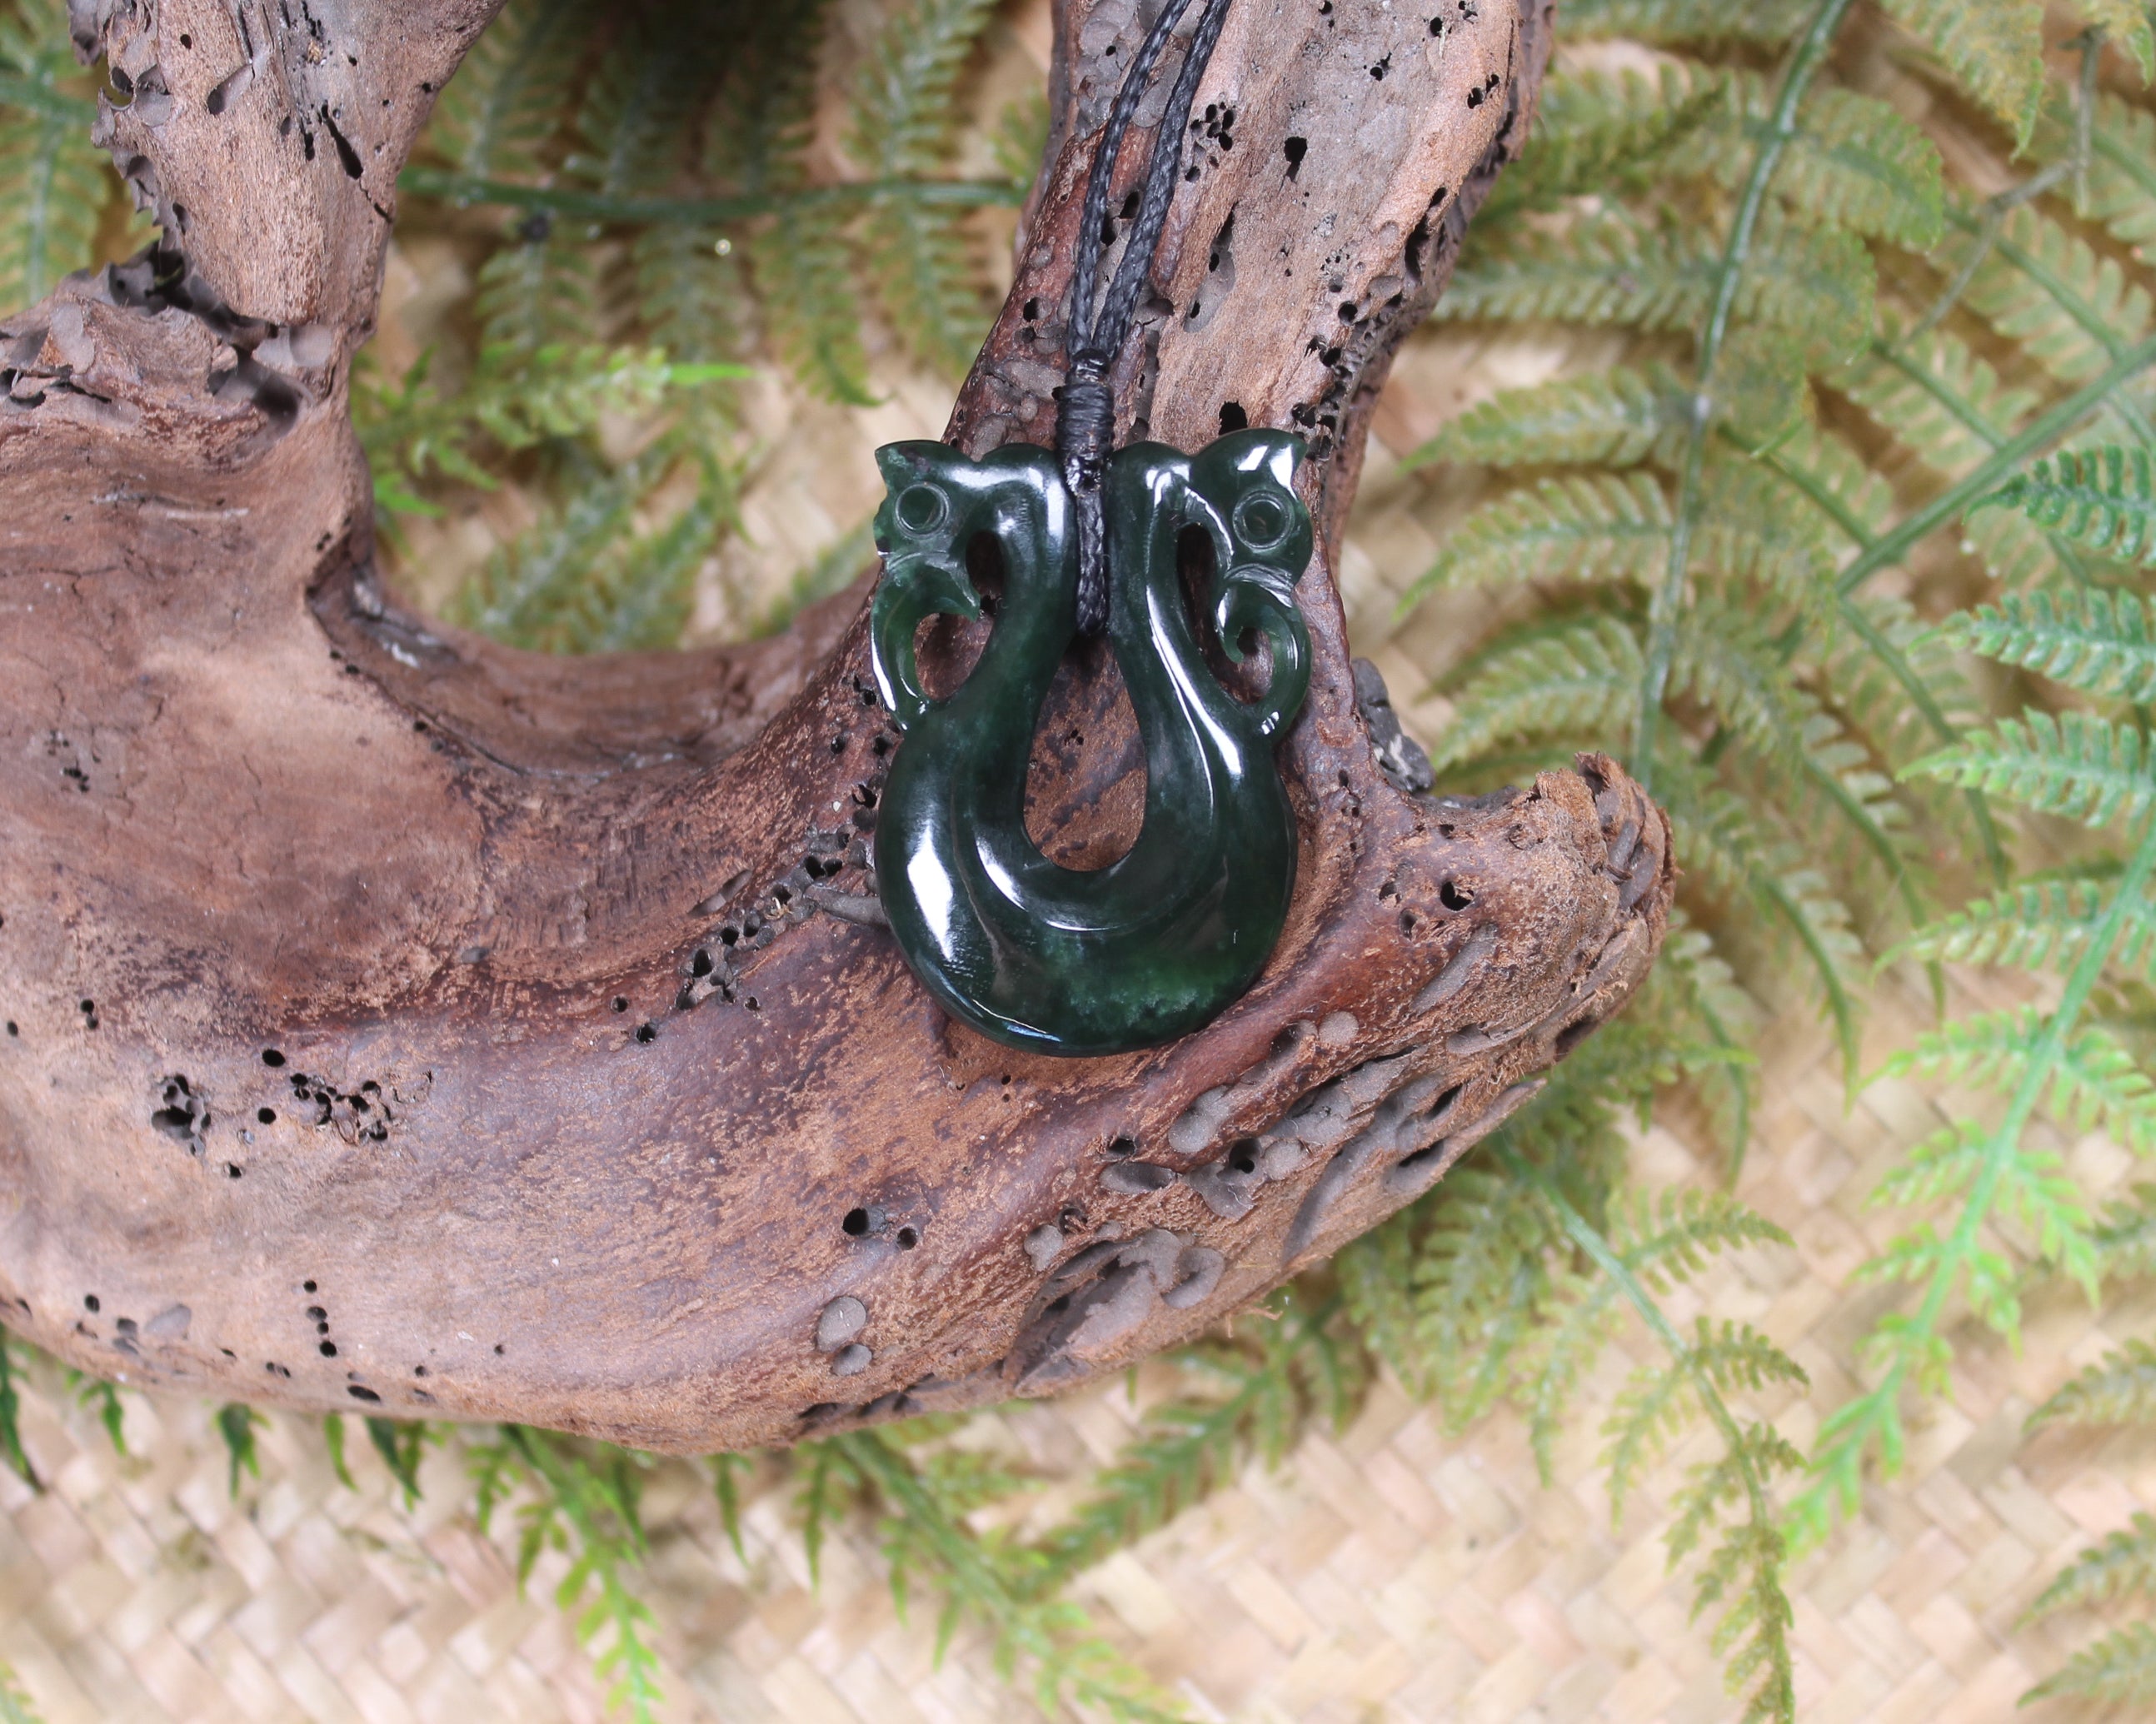 Pekapeka Pendant carved from Kawakawa Pounamu - NZ Greenstone